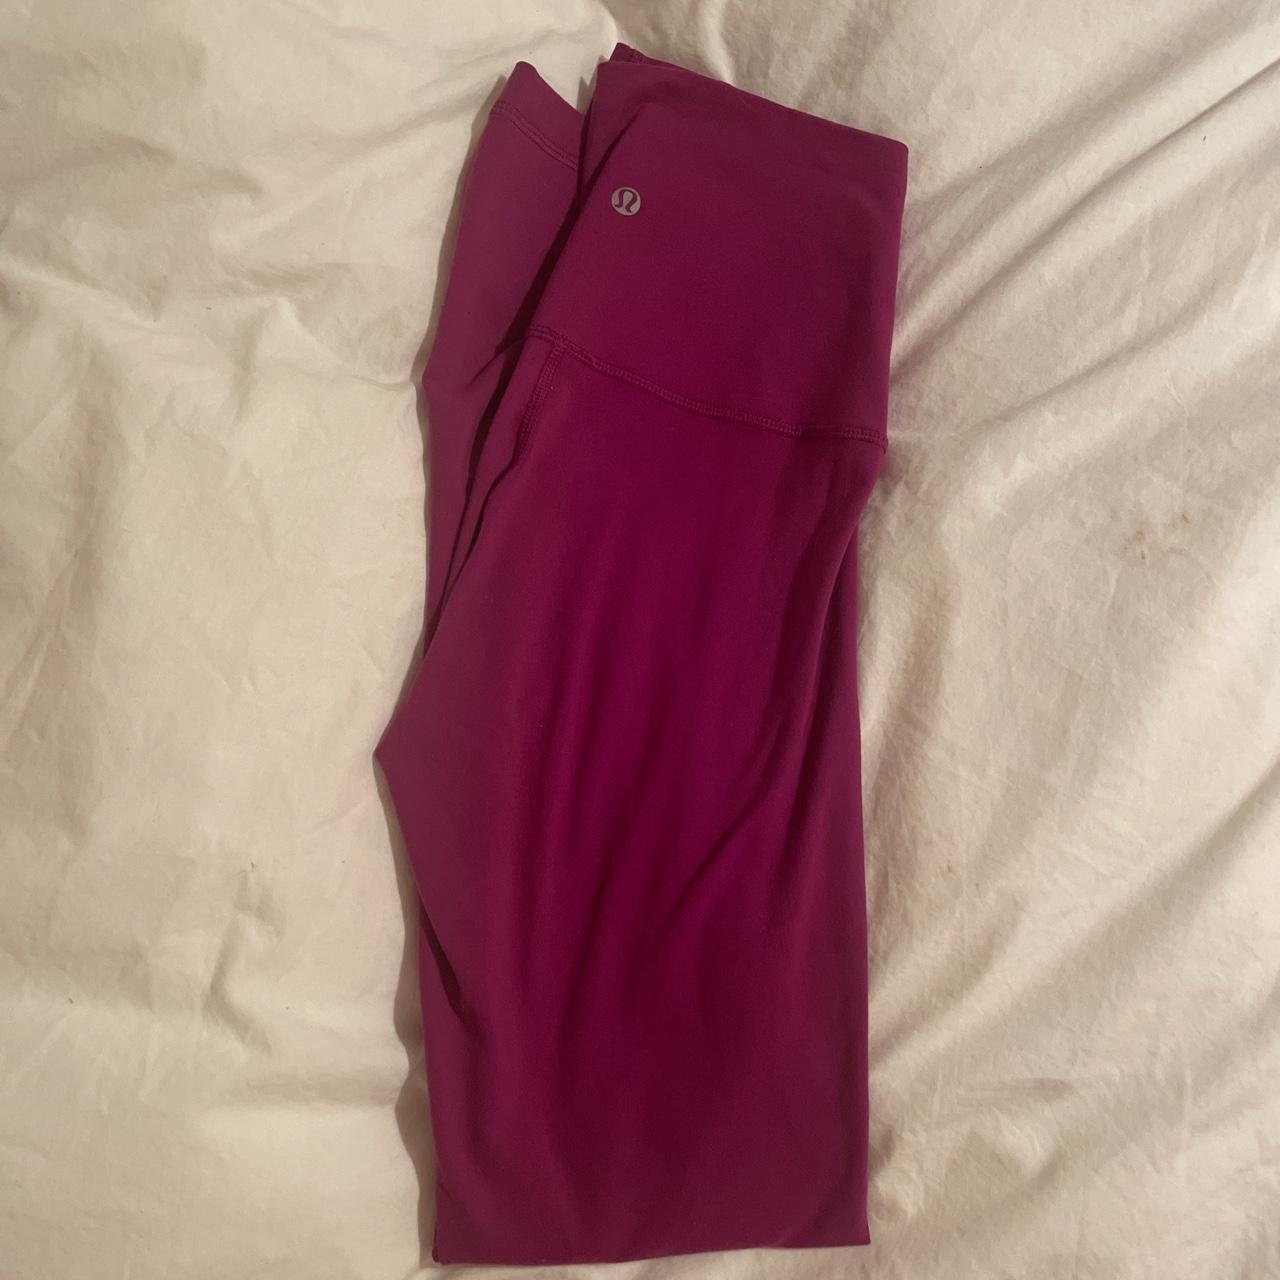 Lululemon align leggings size 2 discontinued color - Depop